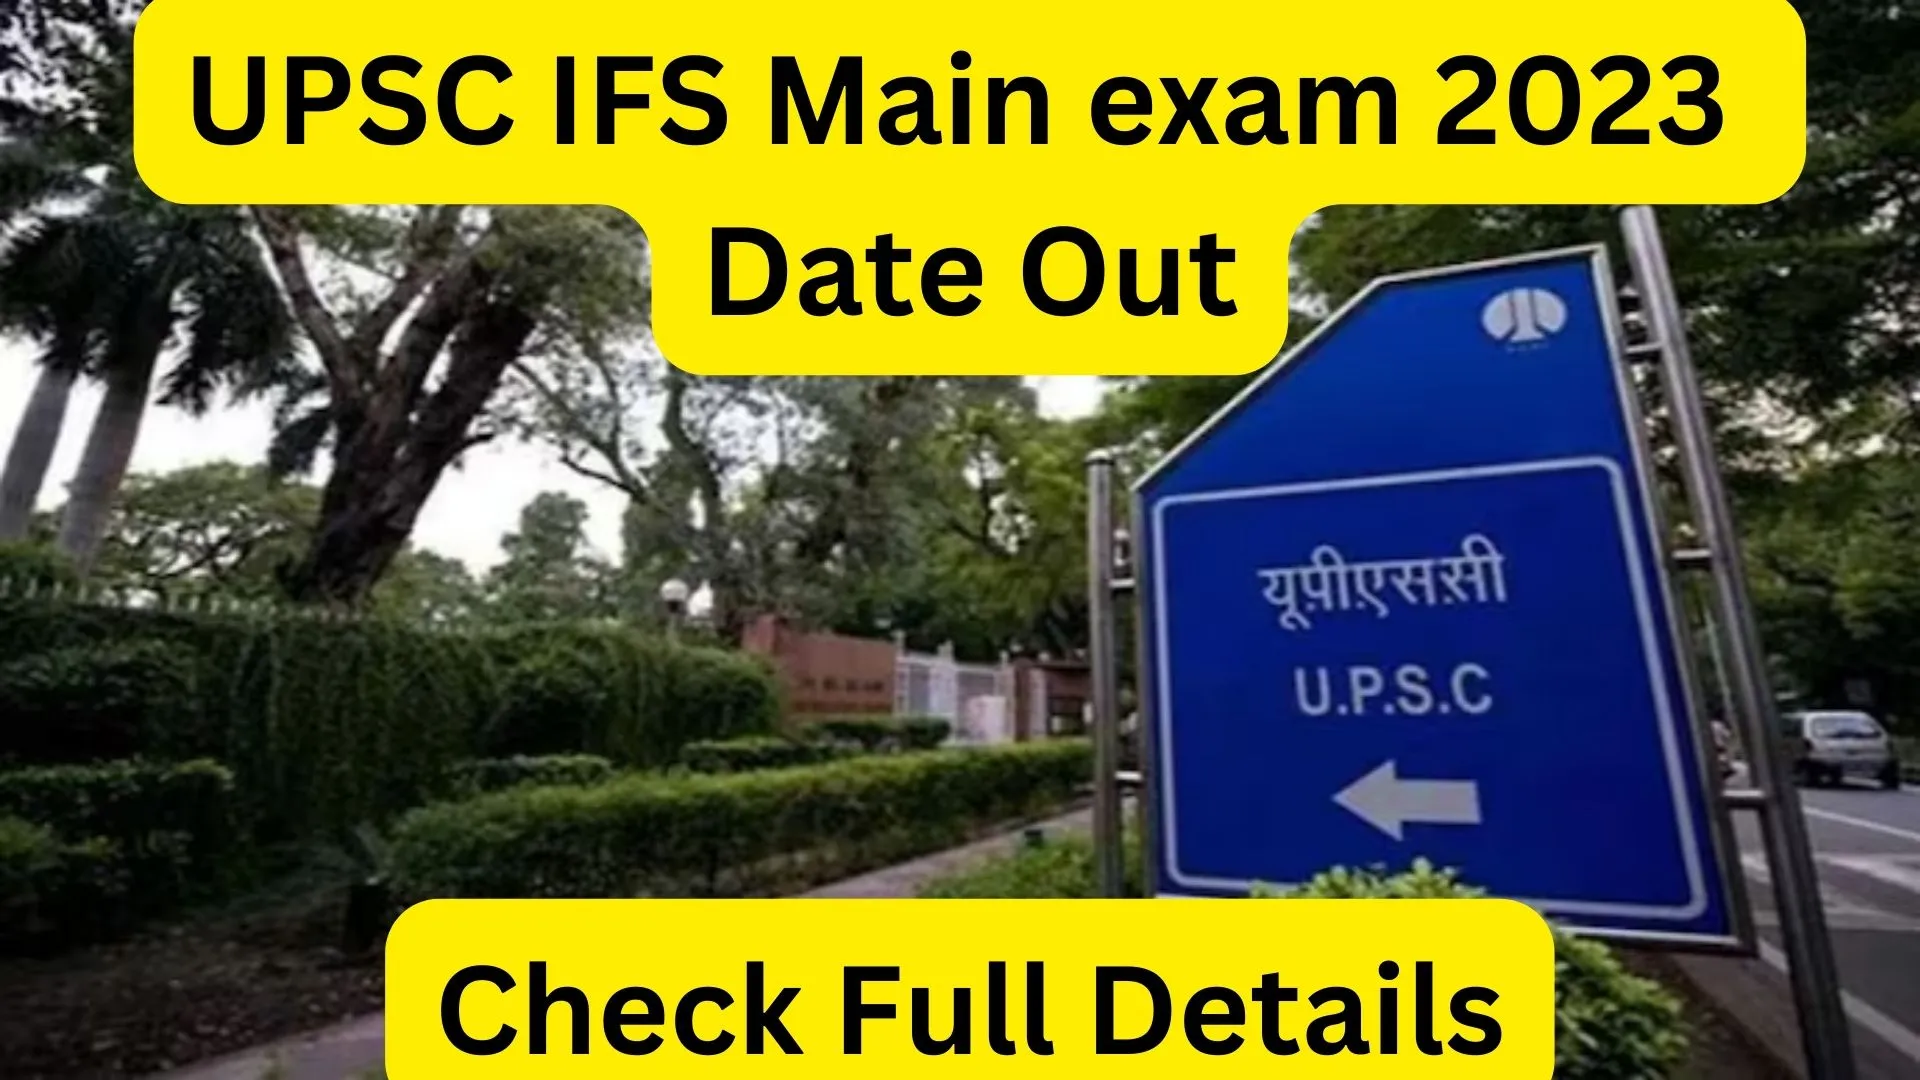 UPSC IFS Main exam 2023